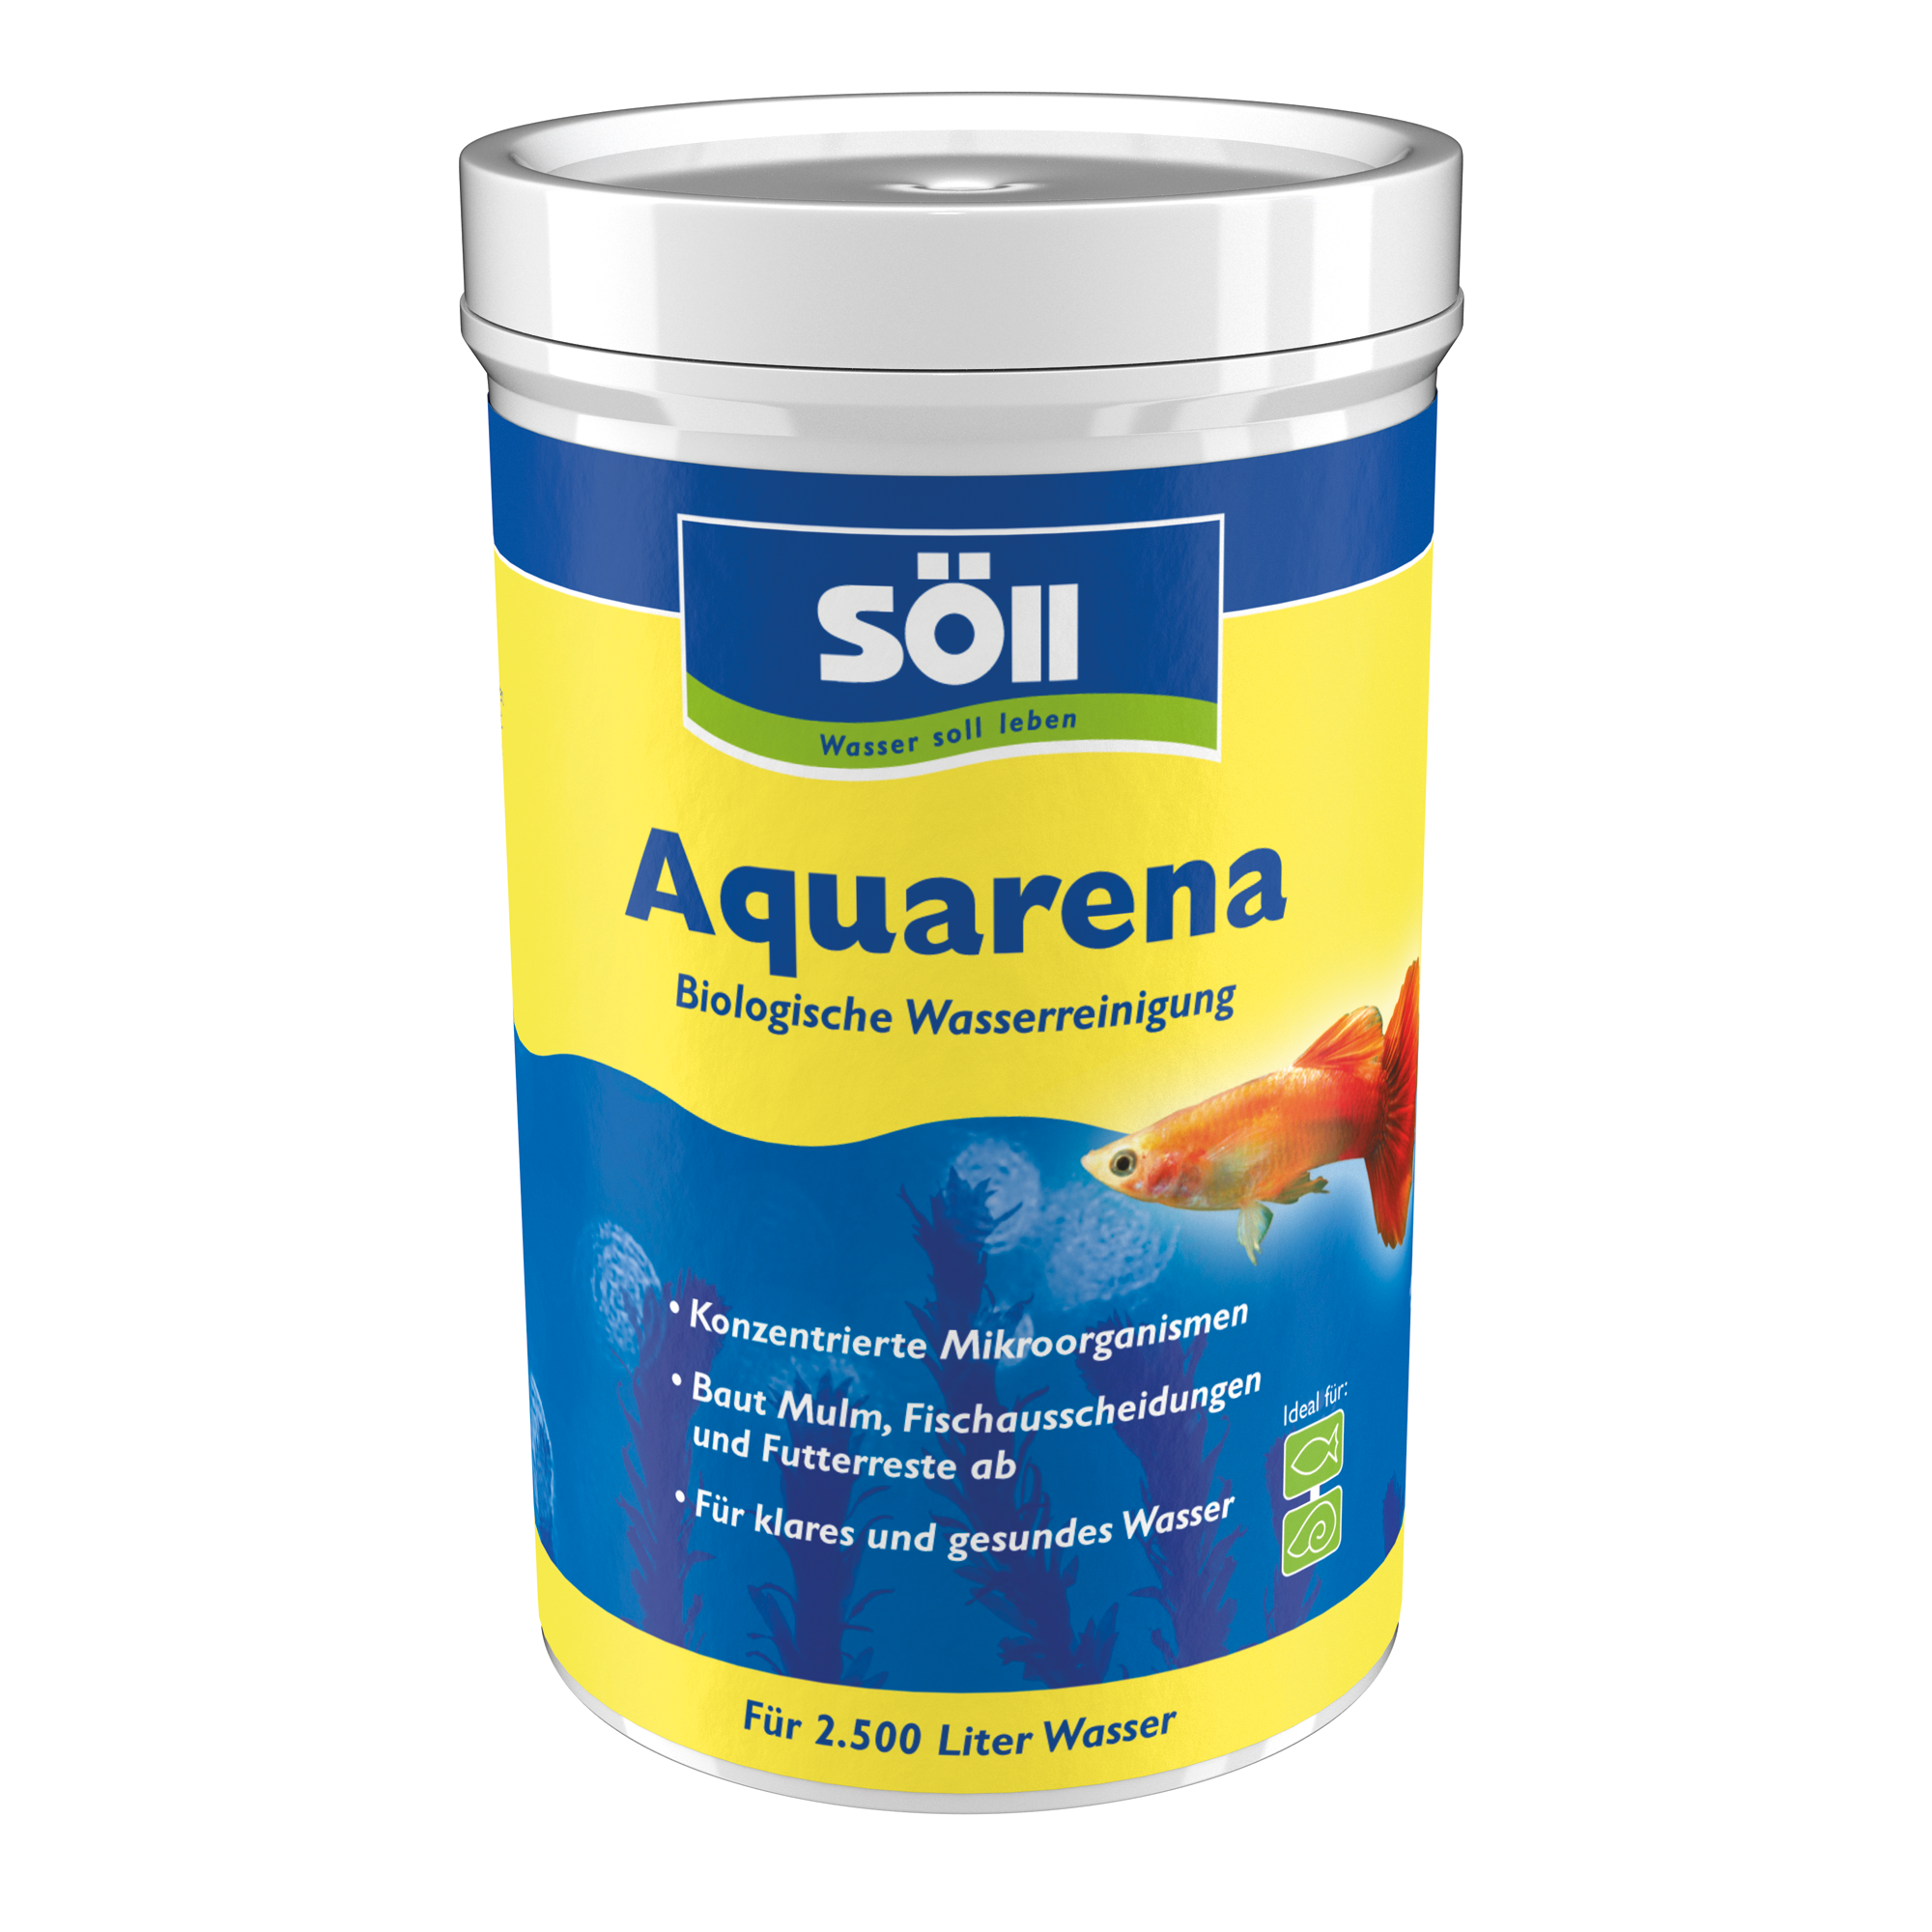 Aquarena 250 g + product picture